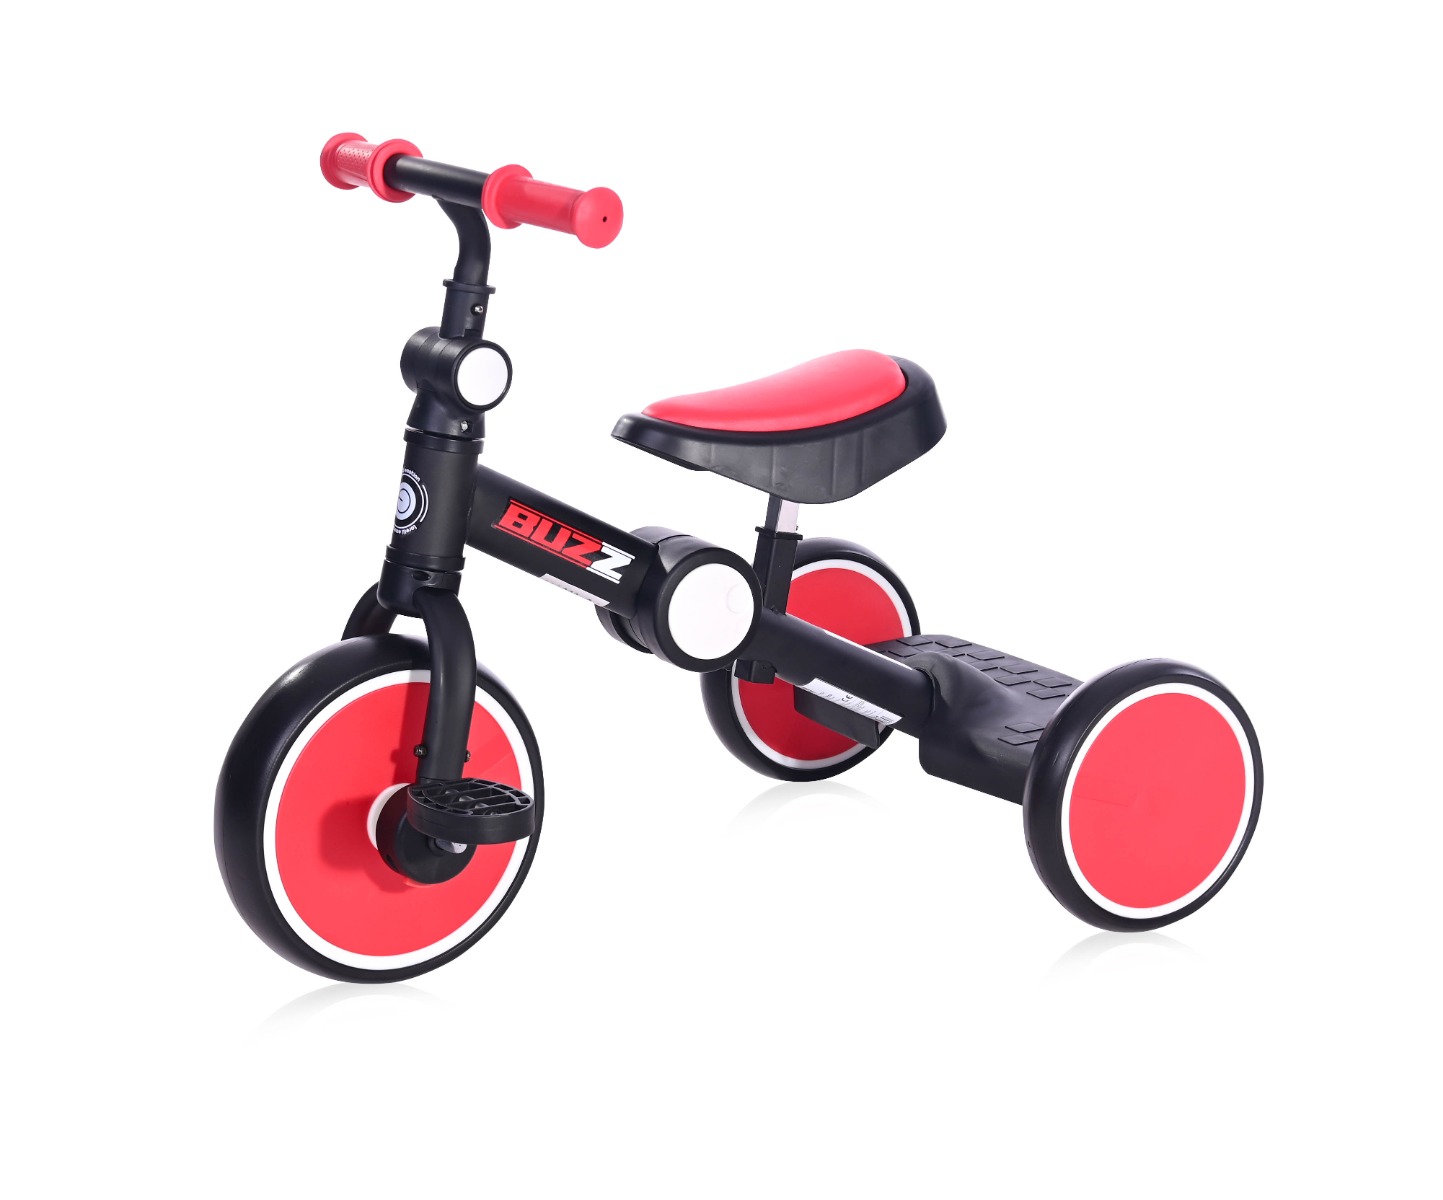 Tricicleta pentru copii, complet pliabila, Lorelli Buzz, Black Red Triciclete Copii imagine 2022